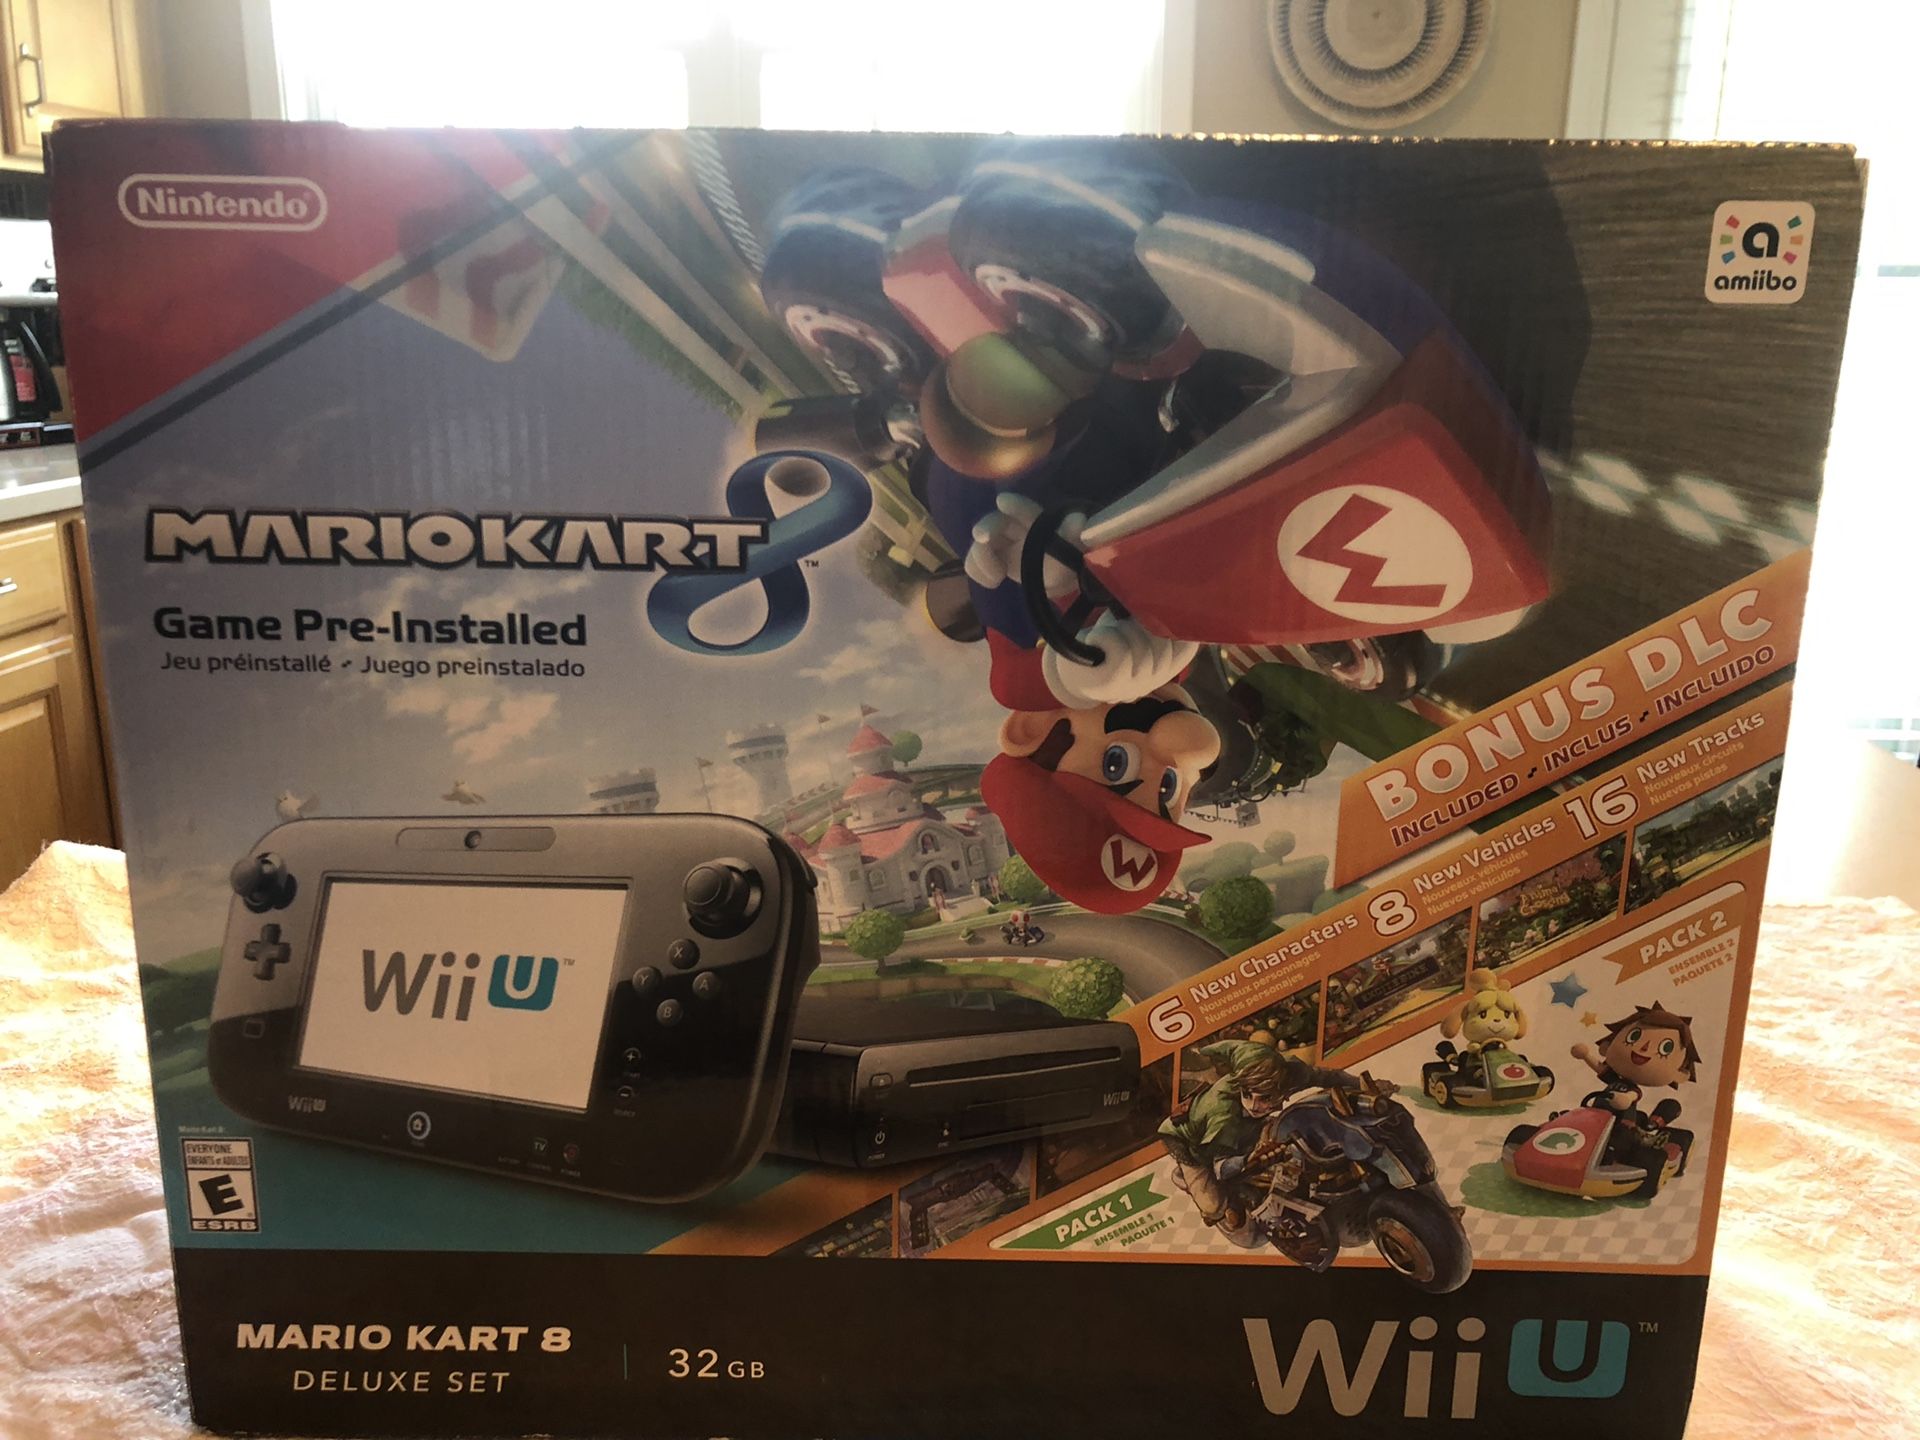 Nintendo Wii U 32GB Mario Kart 8 Deluxe, 4 games Included